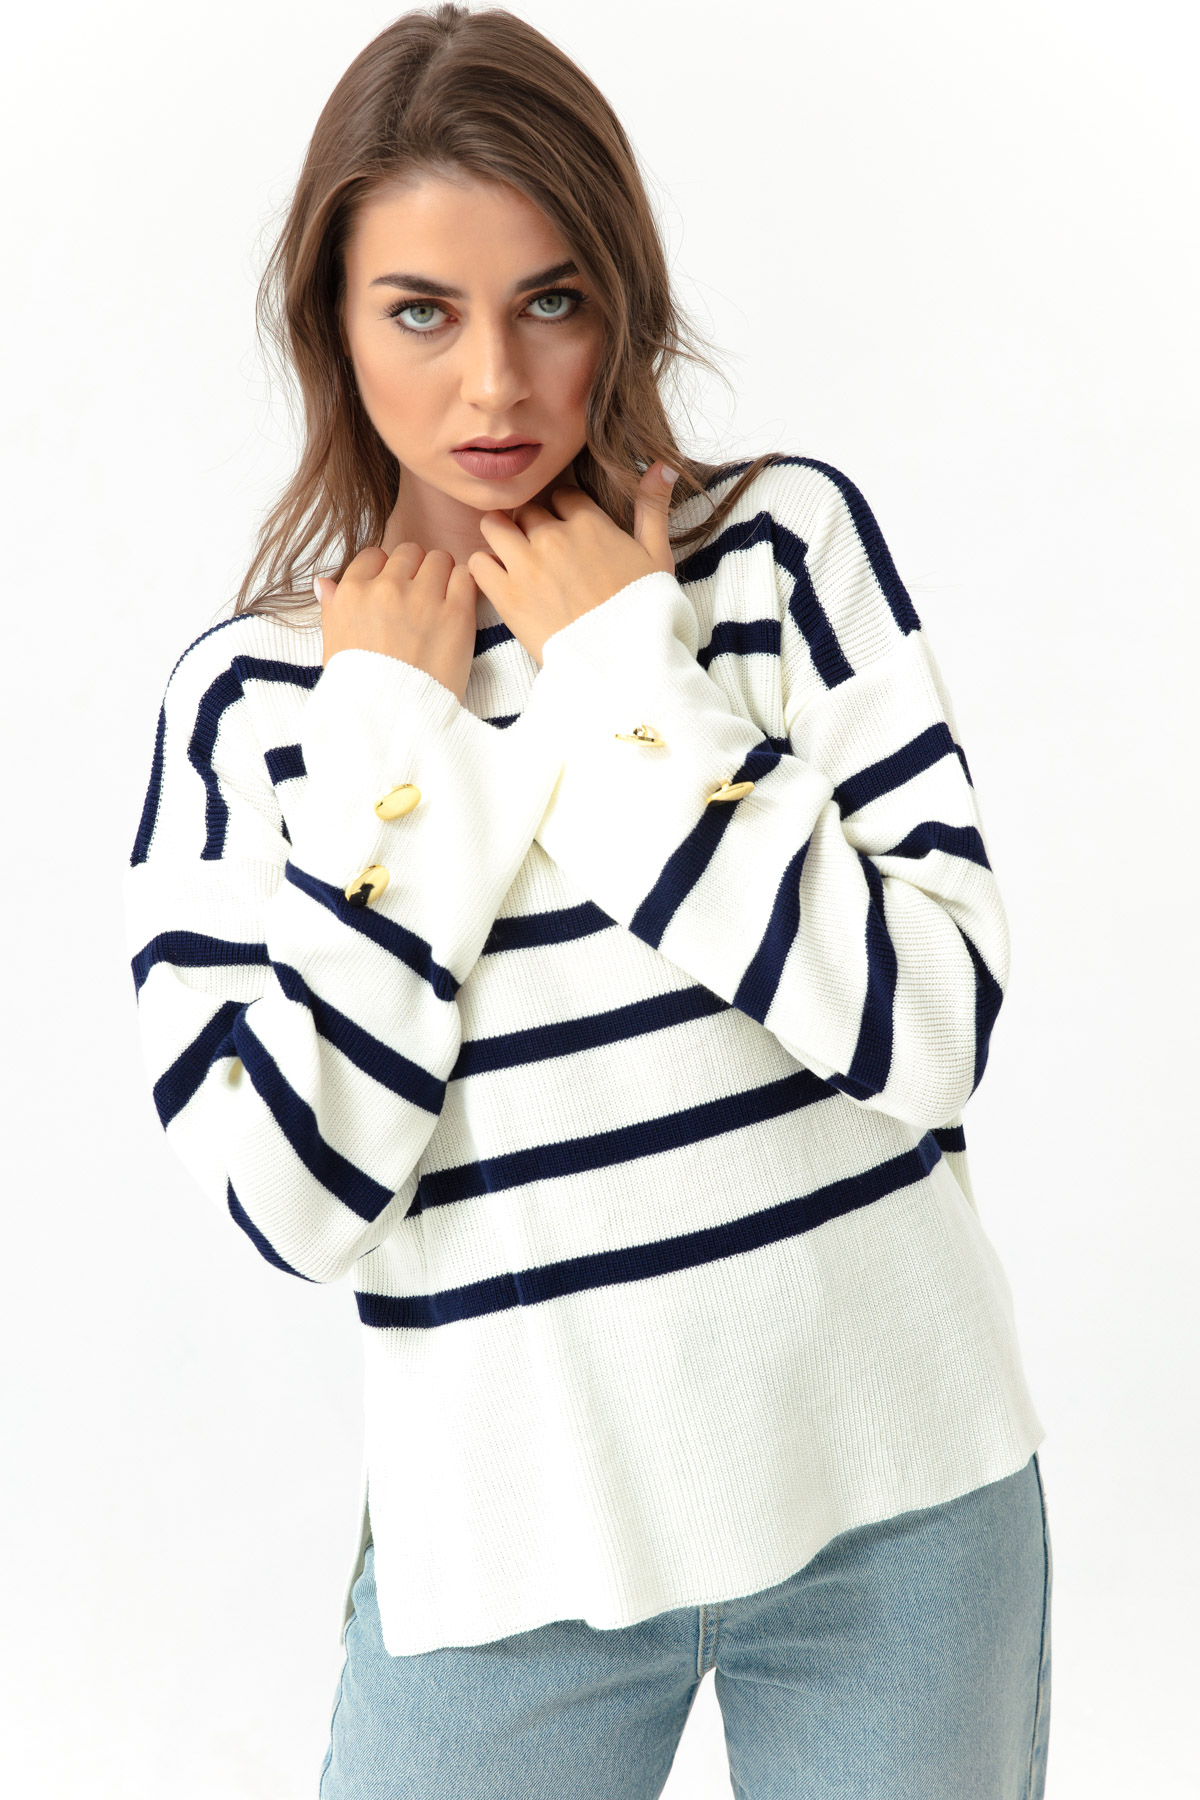 Women's Navy Blue Boat Neck Striped Knitwear Sweater